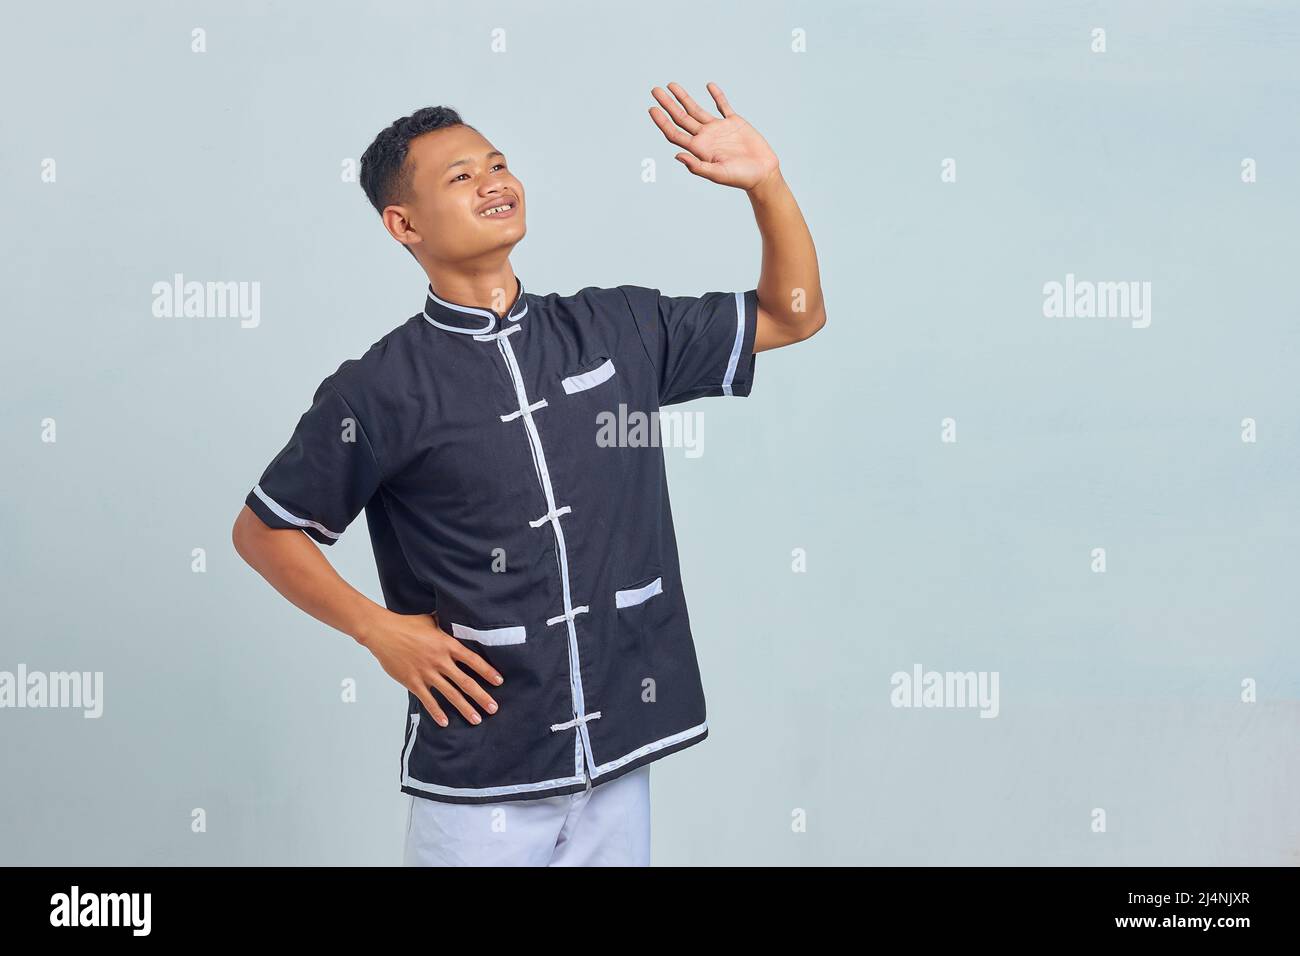 Porträt eines jungen, schmunzelten asiatischen Mannes, der Taekwondo Kimono trägt und eine winkende Geste mit isolierten Handflächen auf grauem Hintergrund macht Stockfoto